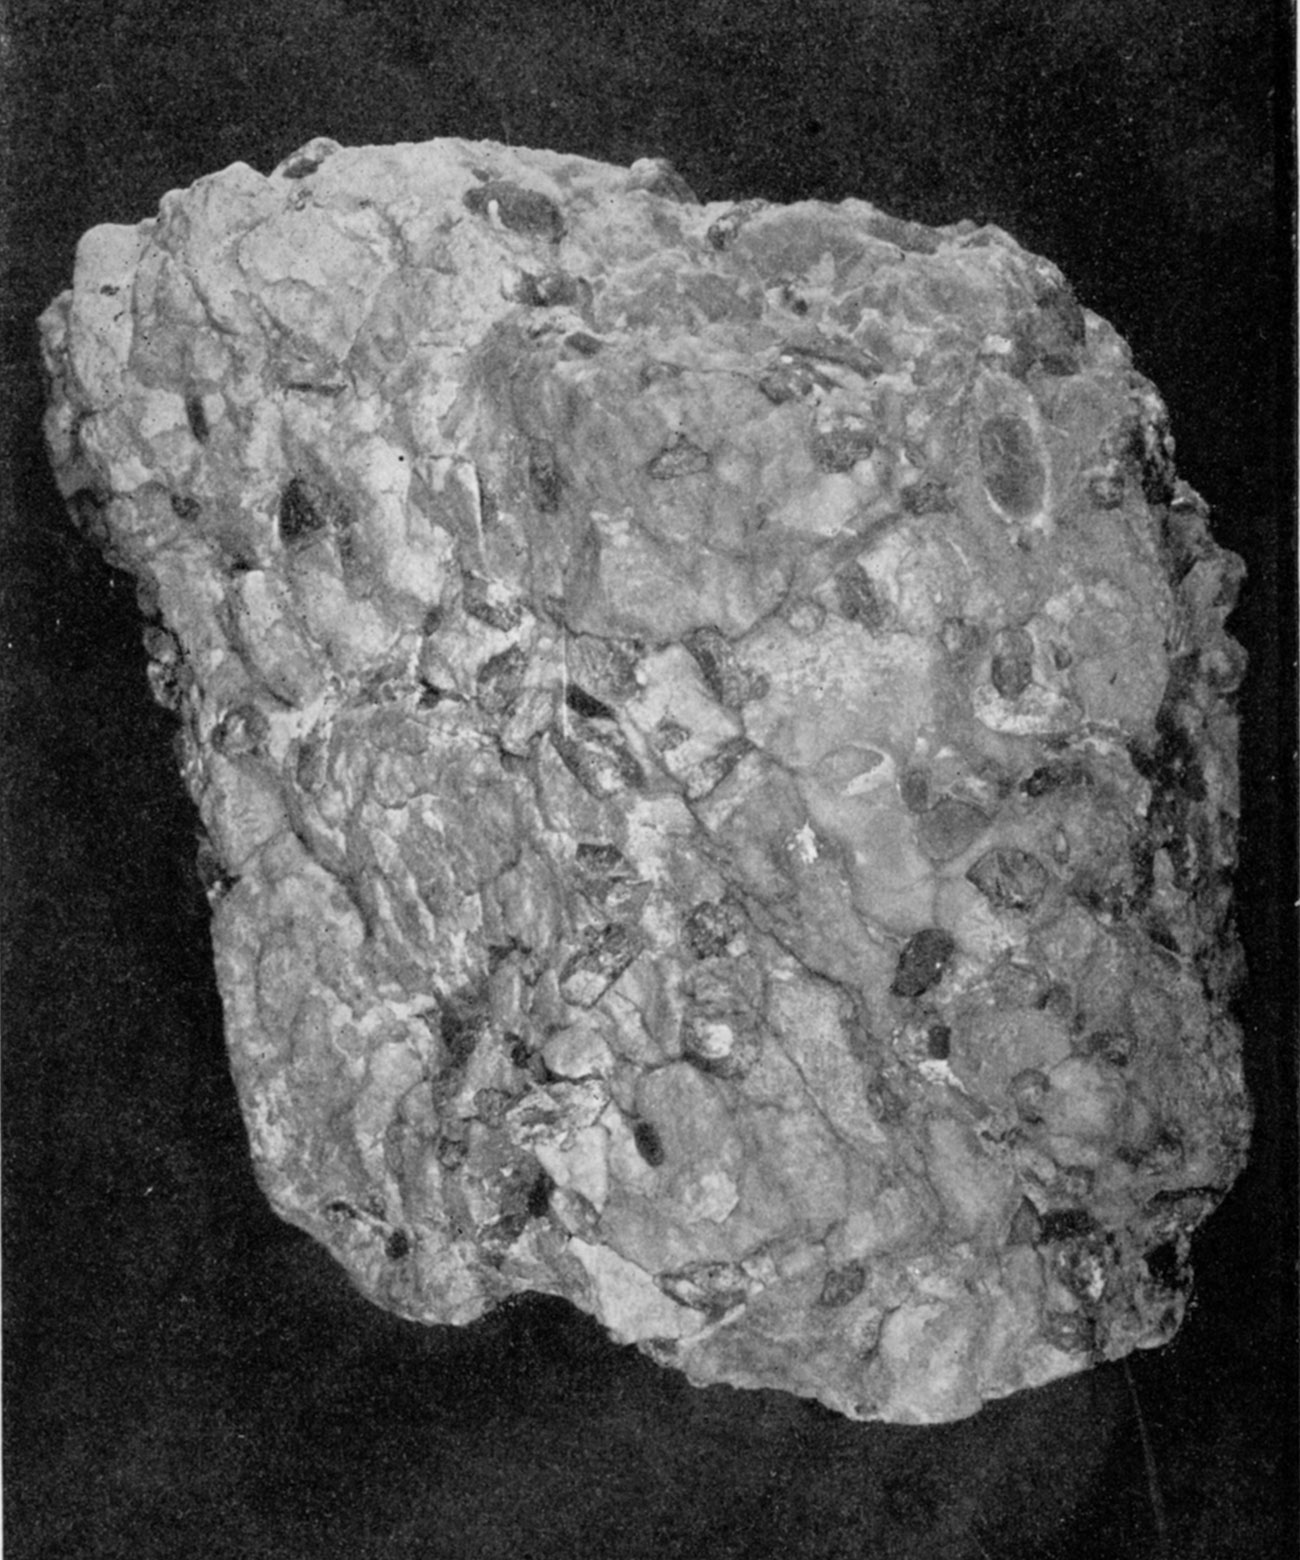 Frontispiece, Rock Gypsum Containing Selenite Crystals.